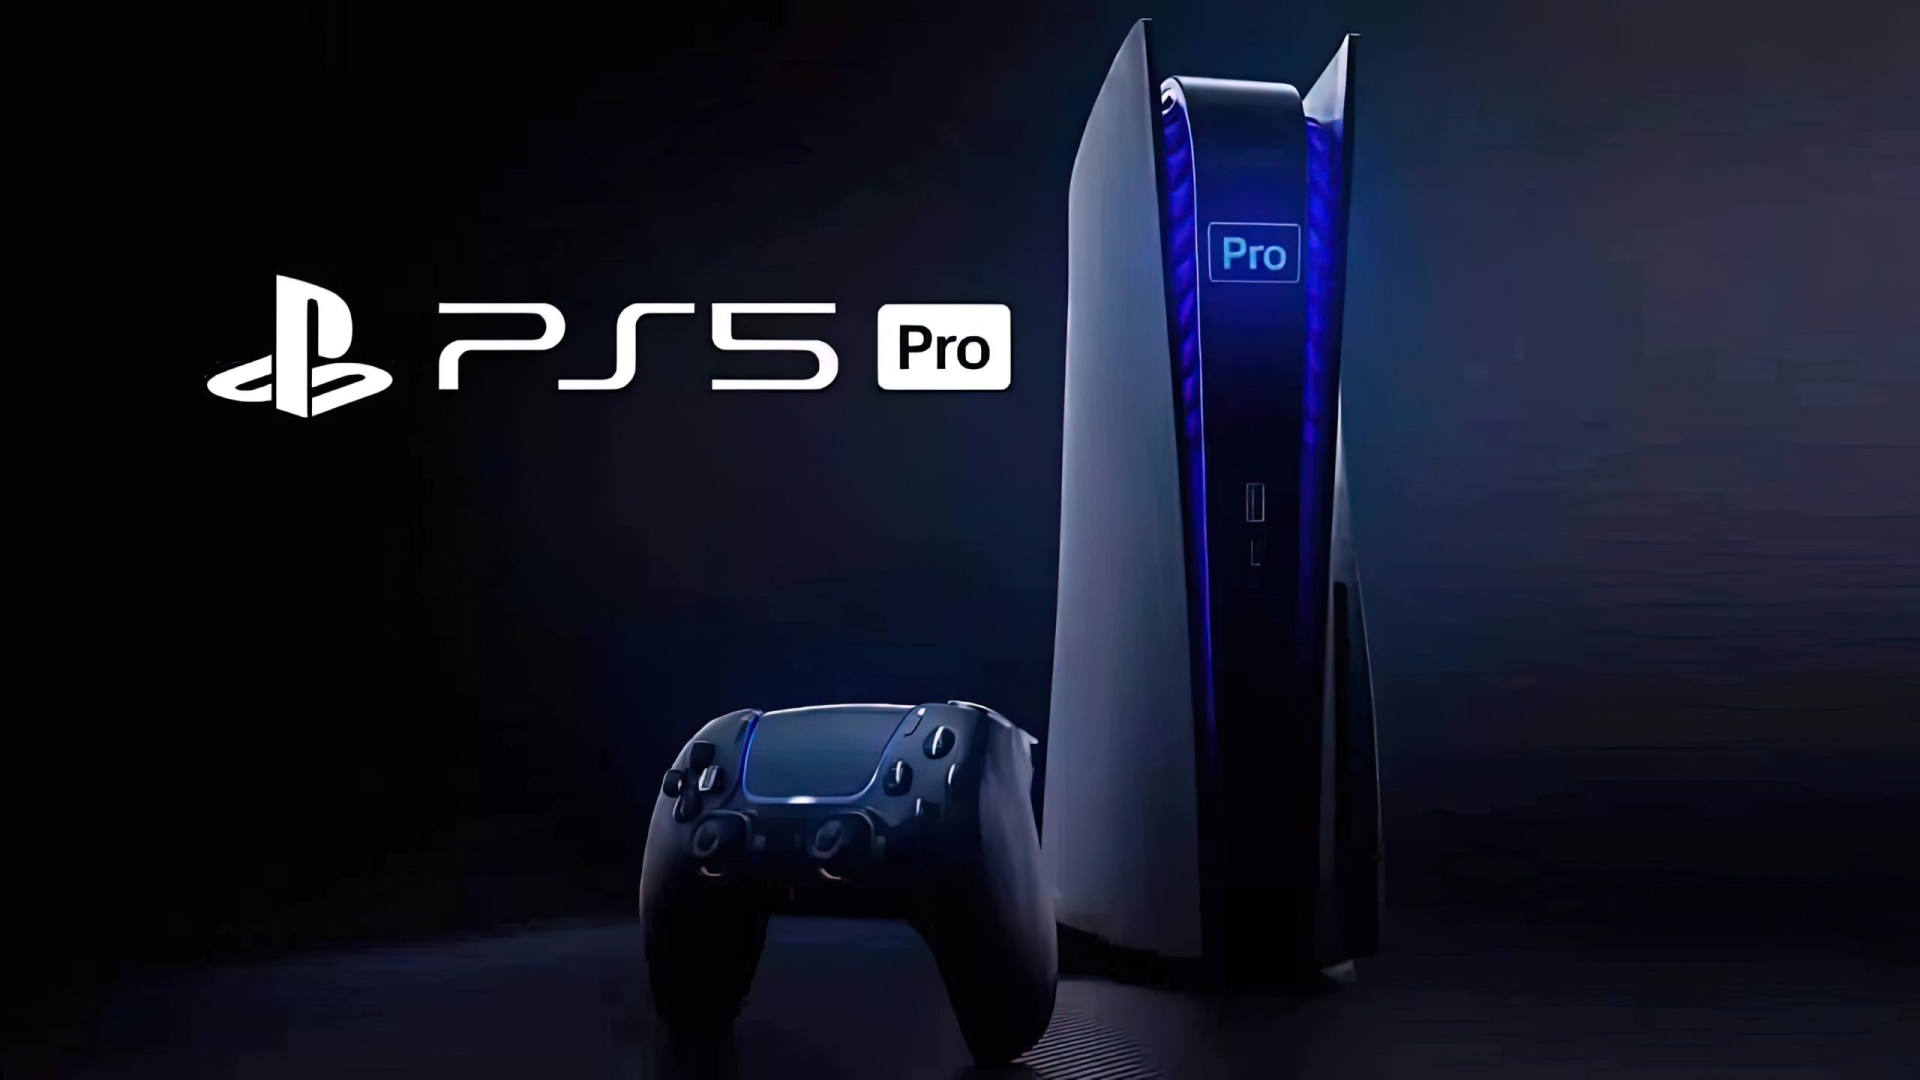 Các nhà phát triển cho rằng PS5 Pro không cần thiết lắm